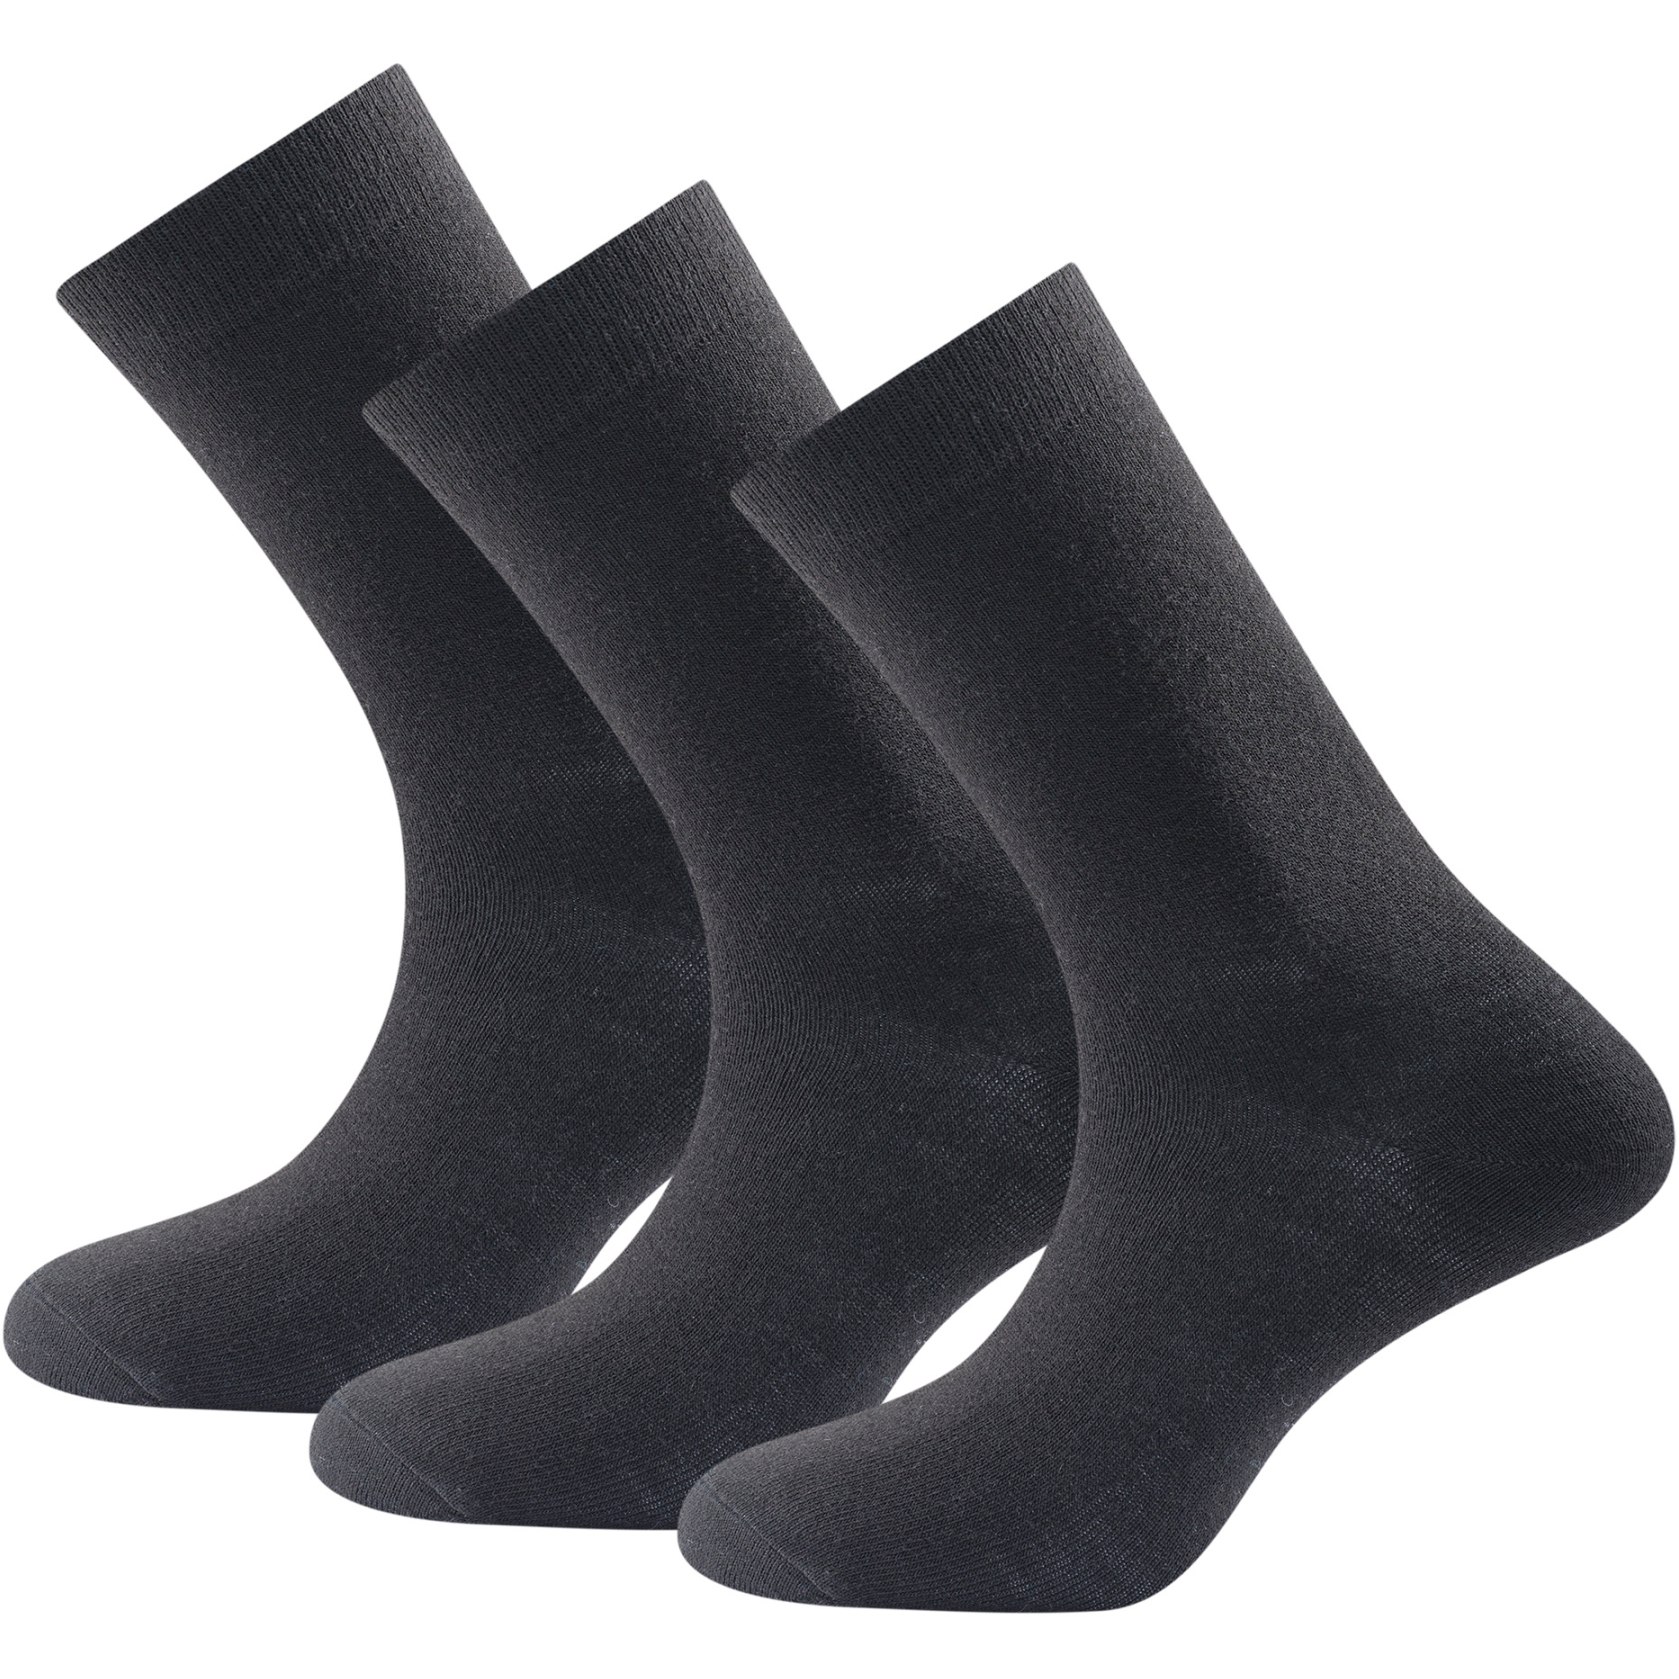 Image of Devold Daily Merino Light Socks (3 Pack) - 950A Black